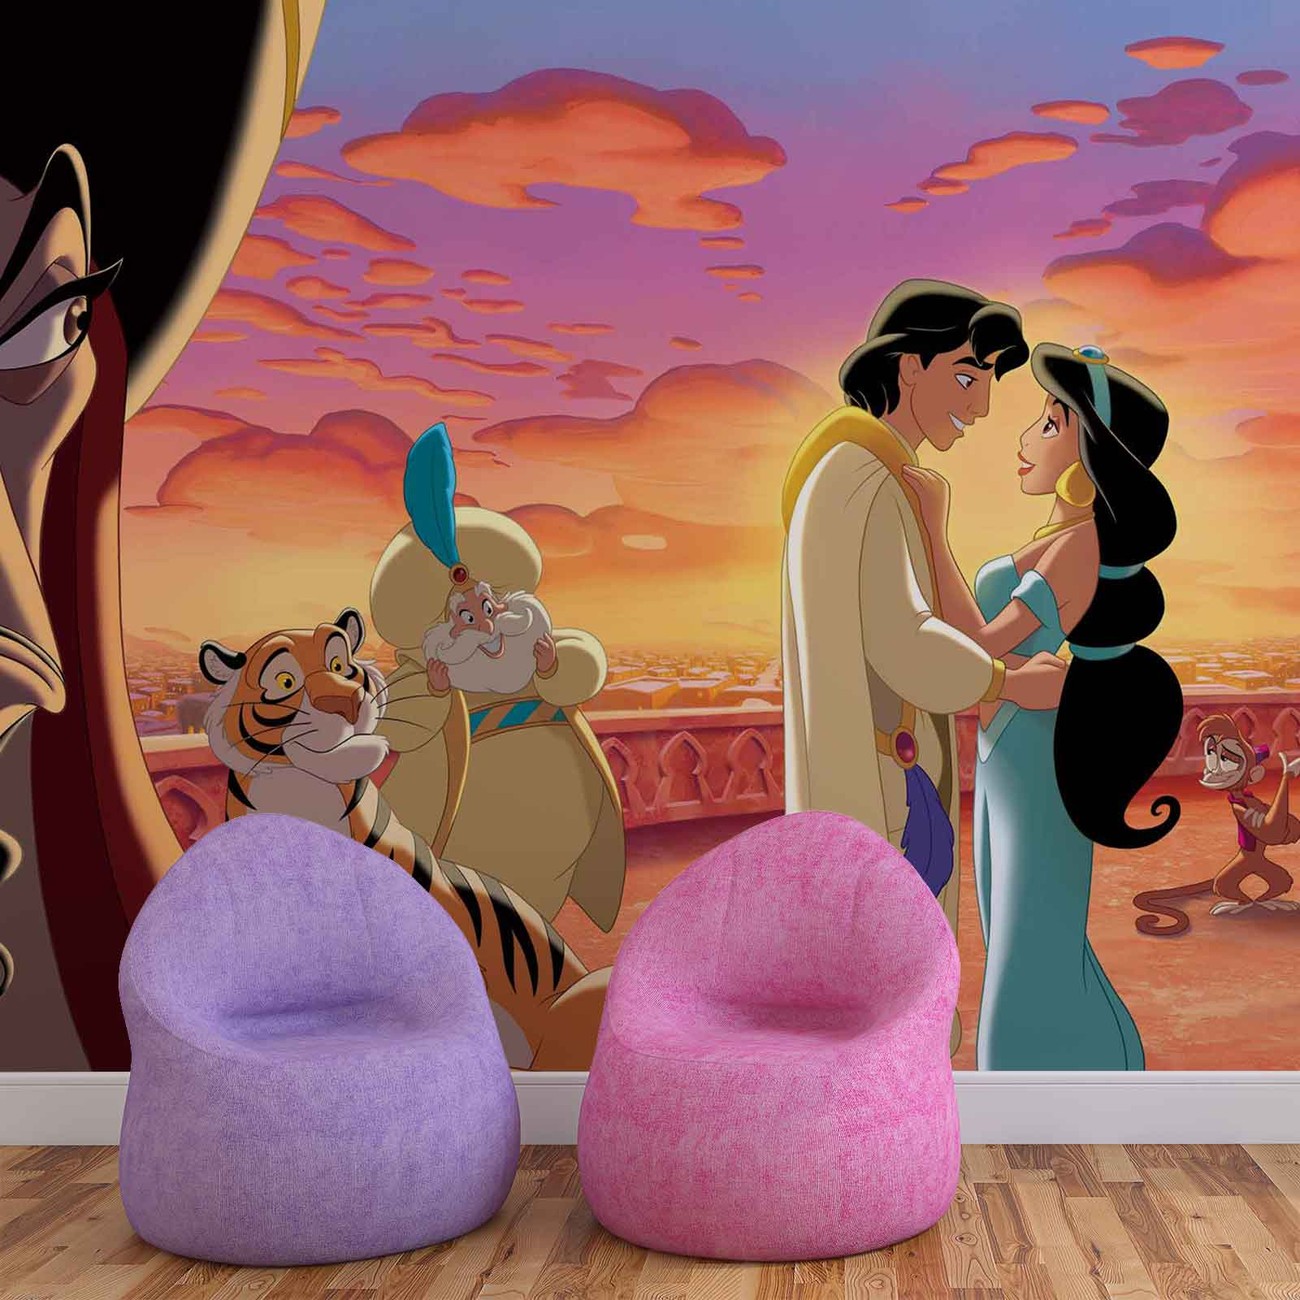 Disney Princess Jasmine And Aladdin Kiss